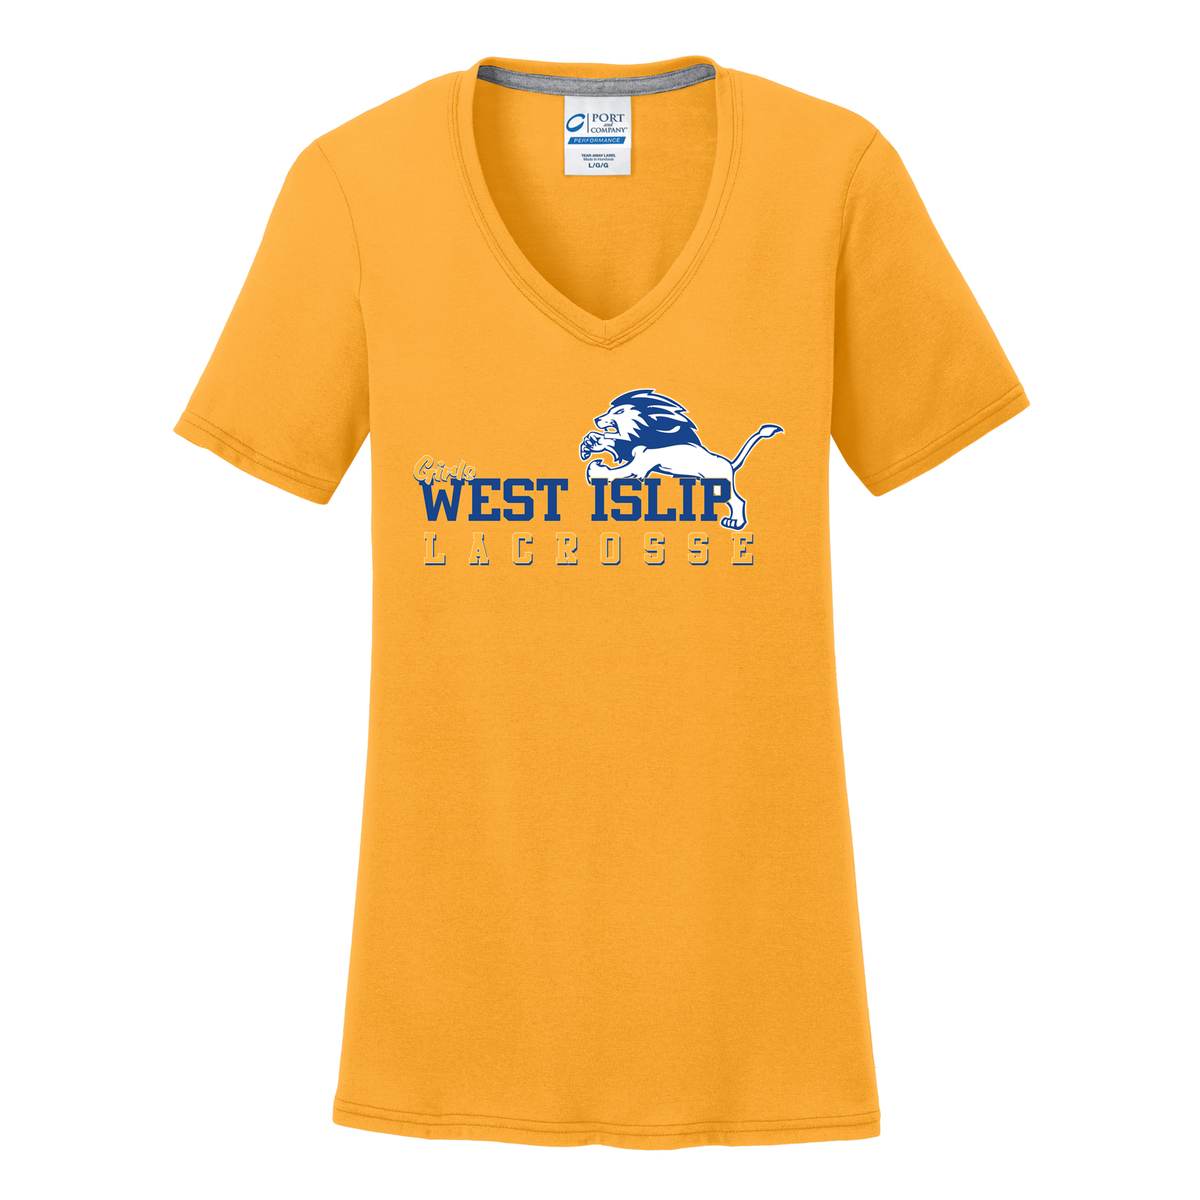 West Islip Girls Youth Lacrosse Women's T-Shirt